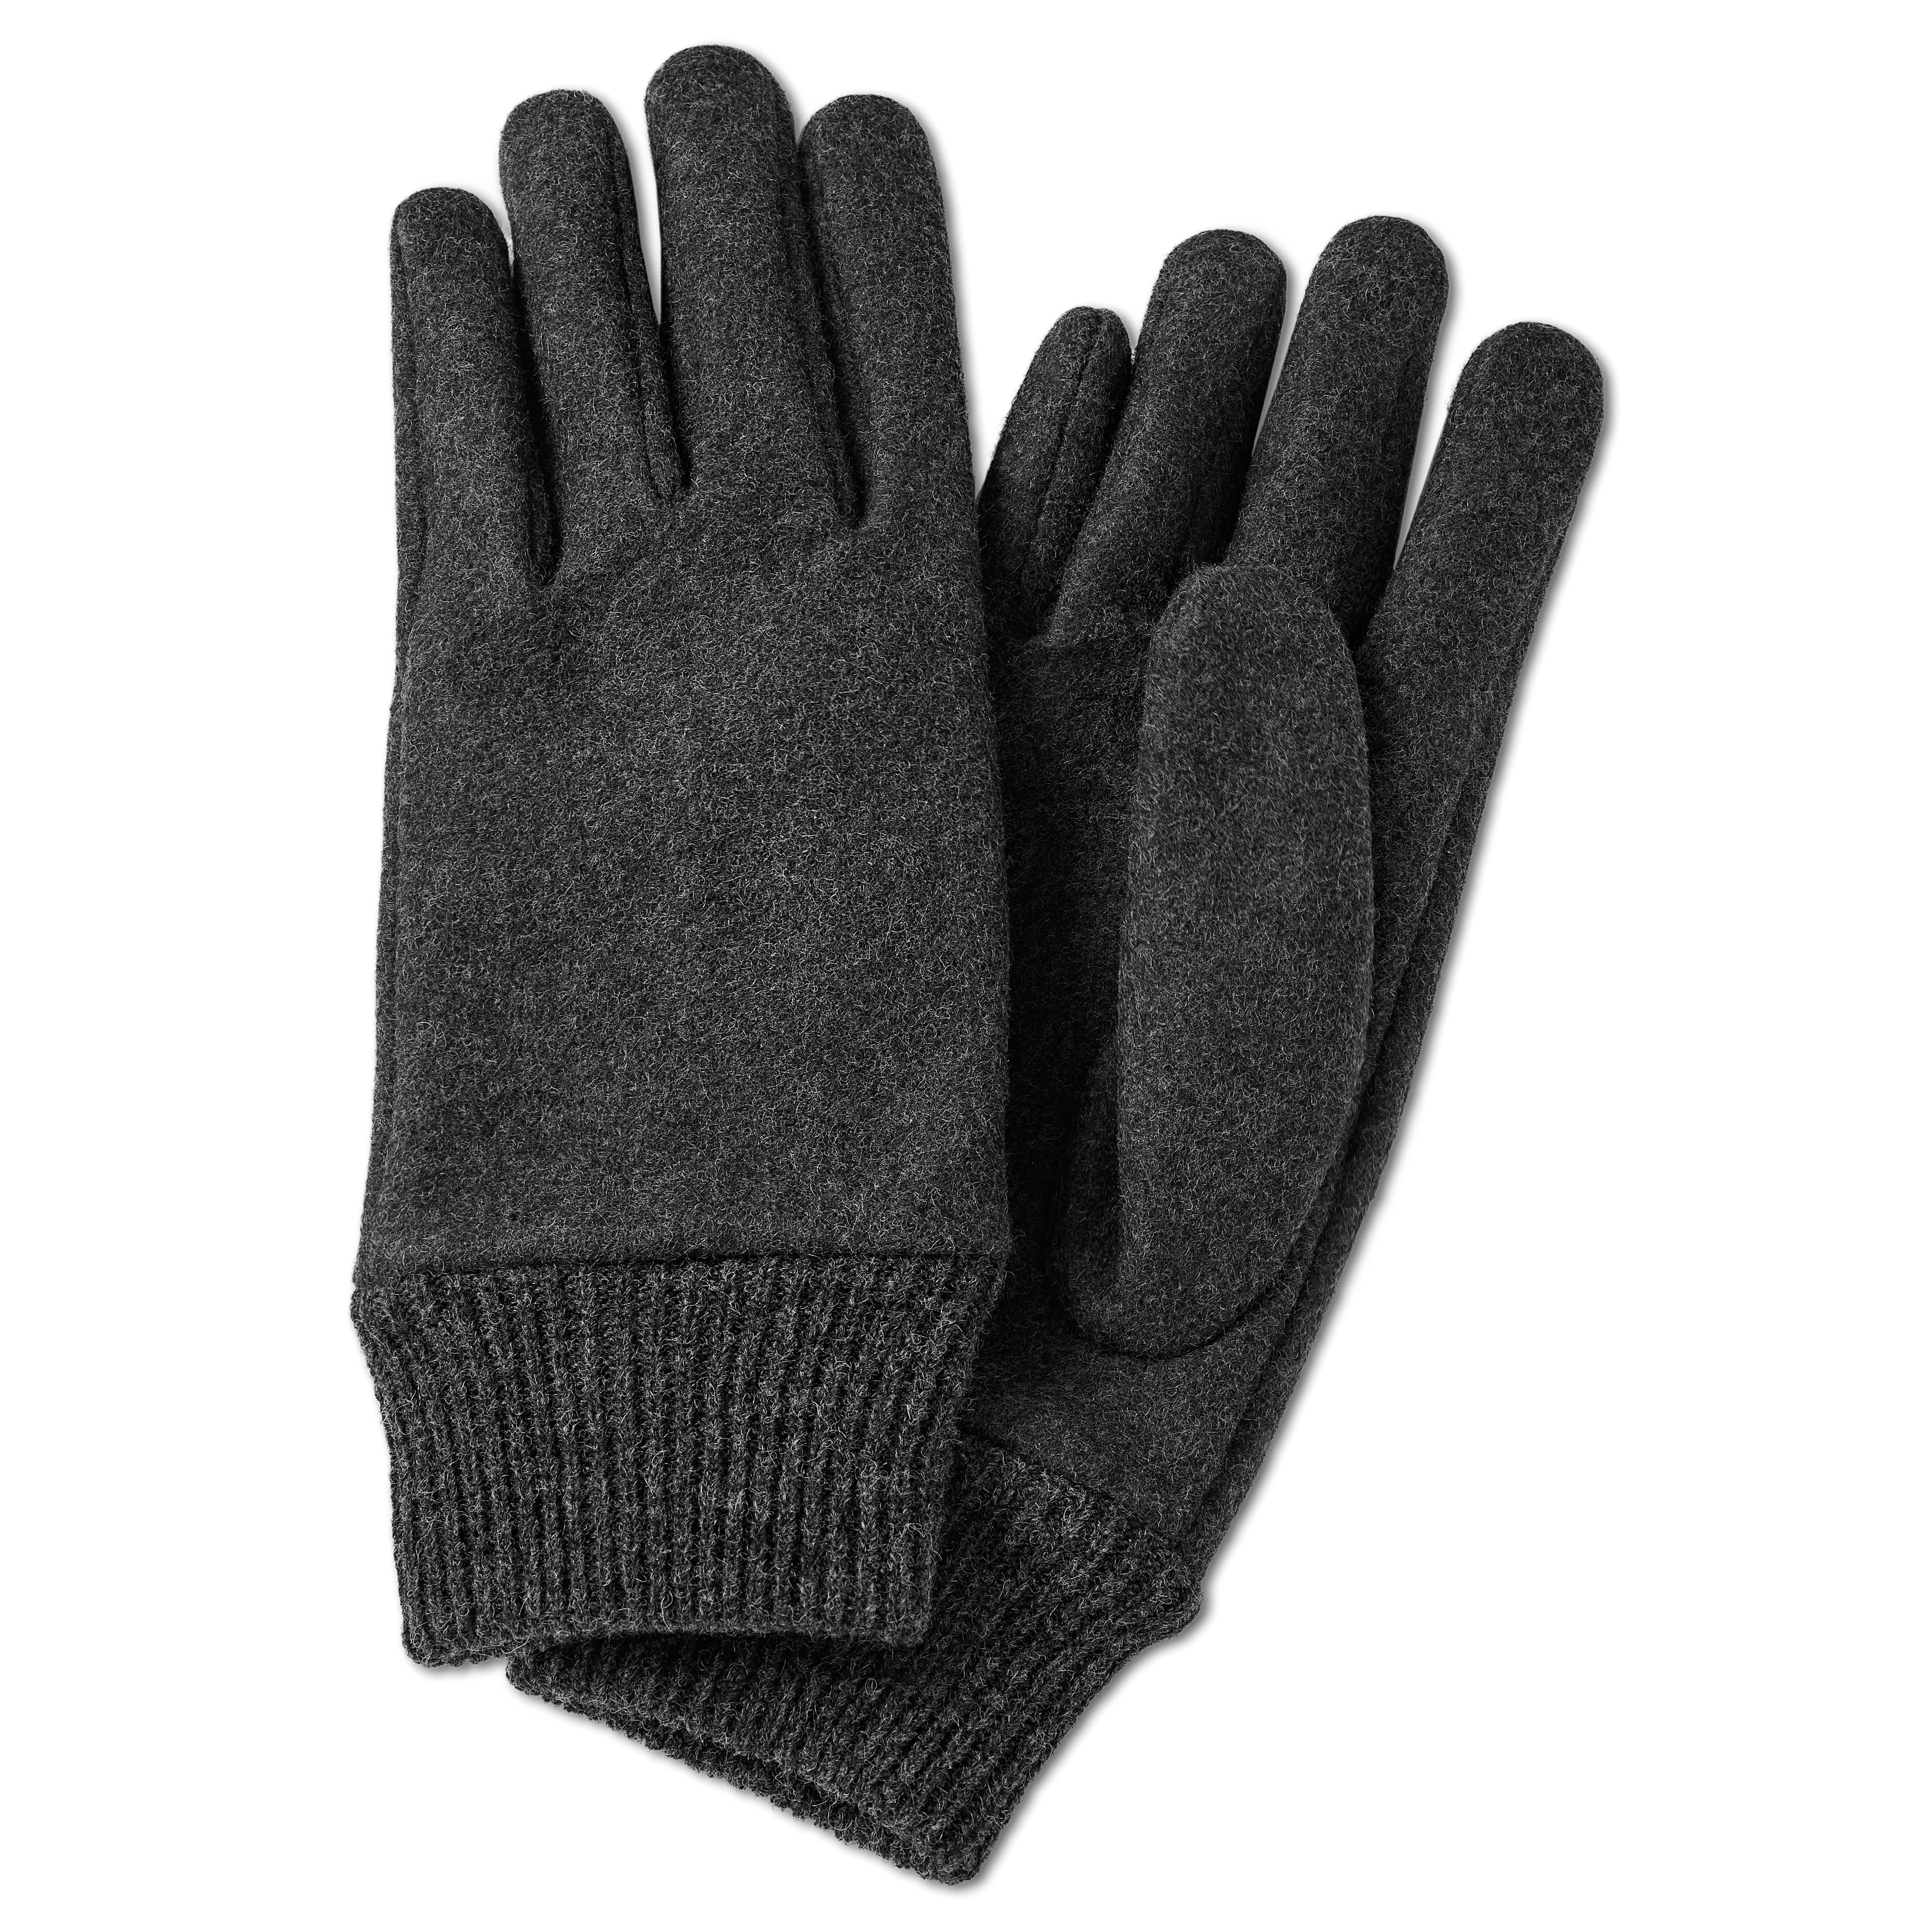 Hiems | Gray Wool | In Sidegren Gloves stock! 